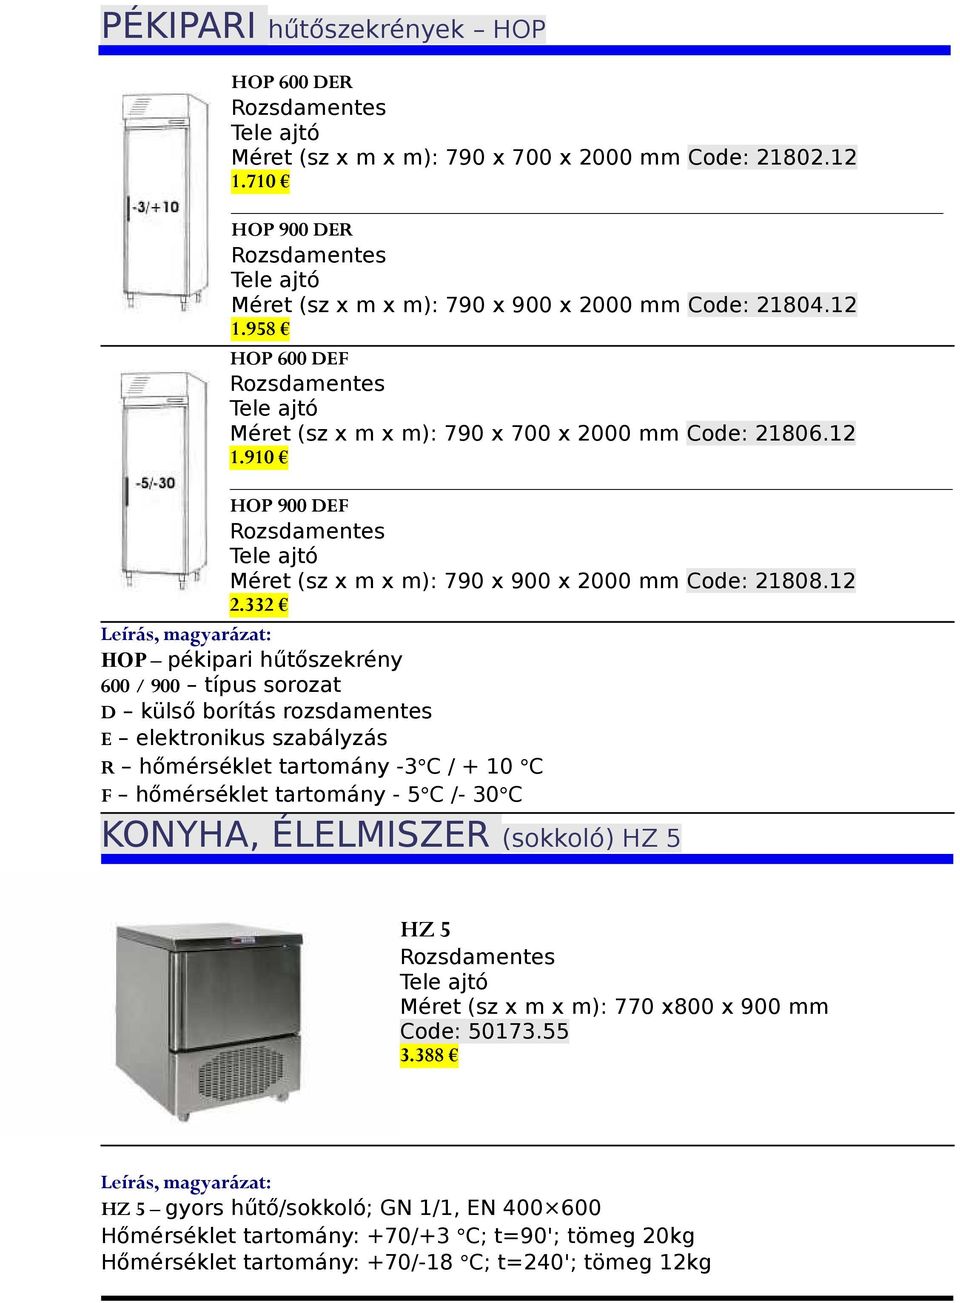 332 Leírás, magyarázat: HOP pékipari hűtőszekrény 600 / 900 típus sorozat D külső borítás rozsdamentes E elektronikus szabályzás R hőmérséklet tartomány -3 C / + 10 C F hőmérséklet tartomány - 5 C